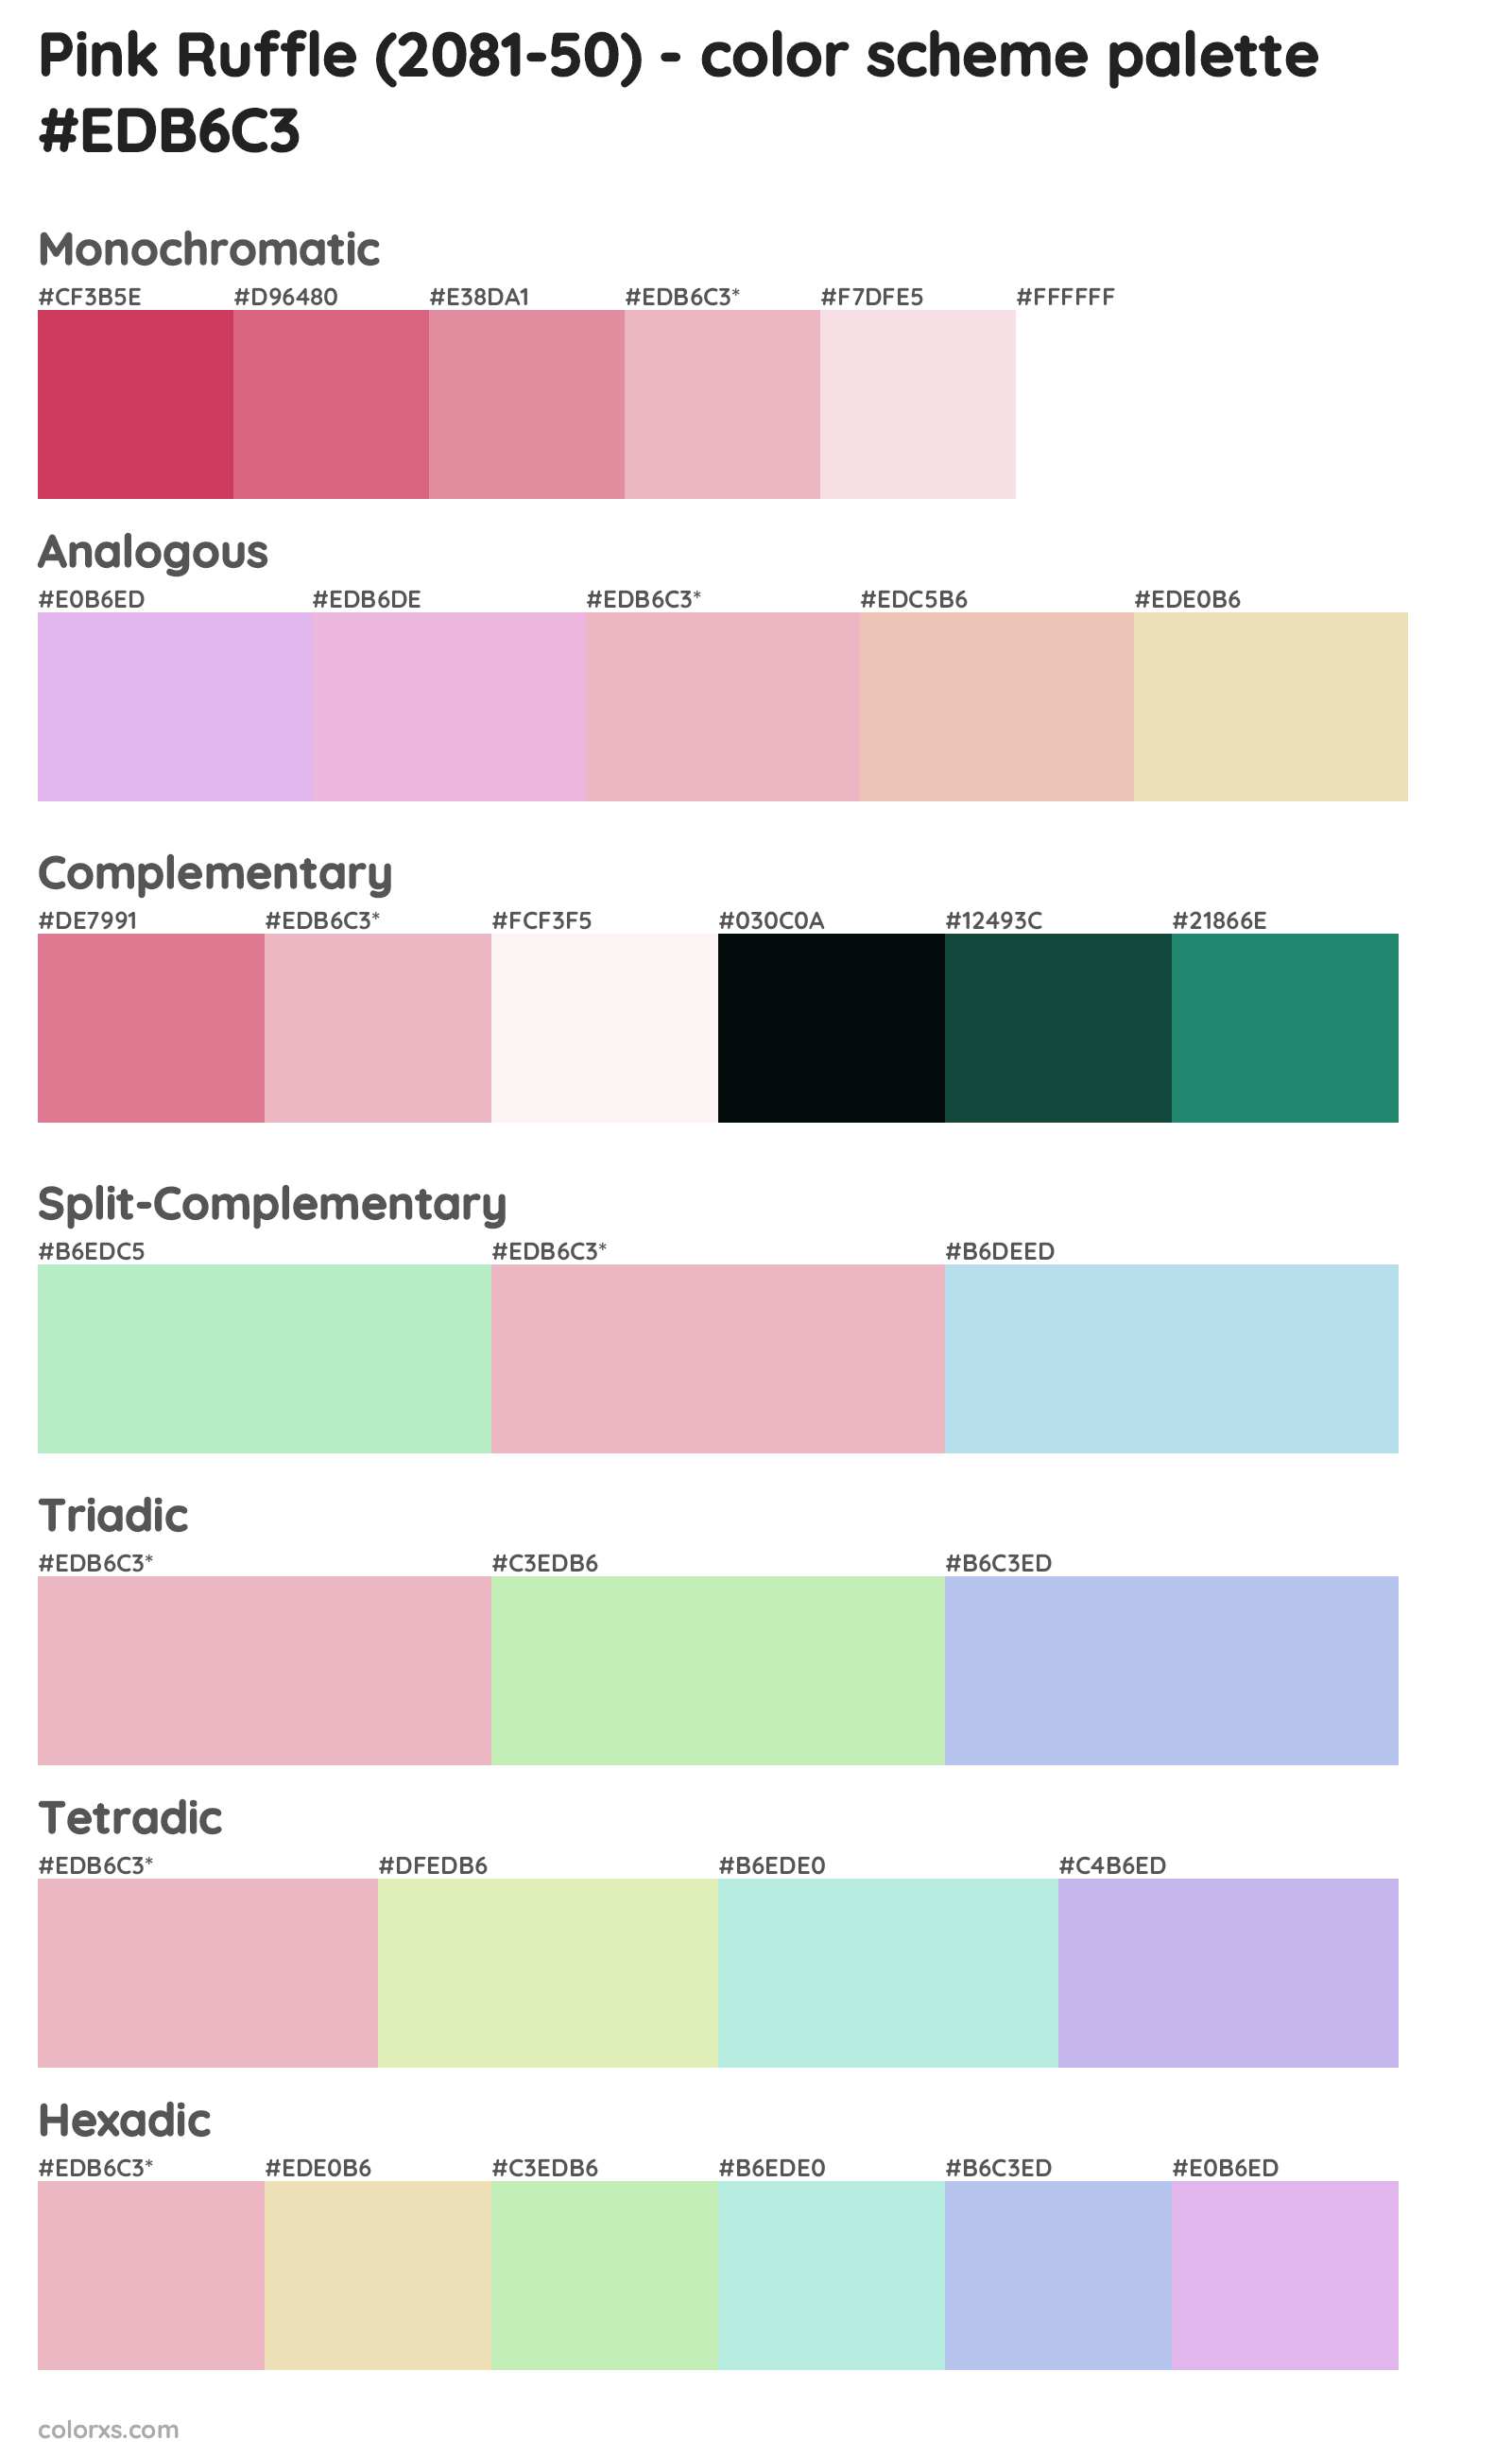 Pink Ruffle (2081-50) Color Scheme Palettes